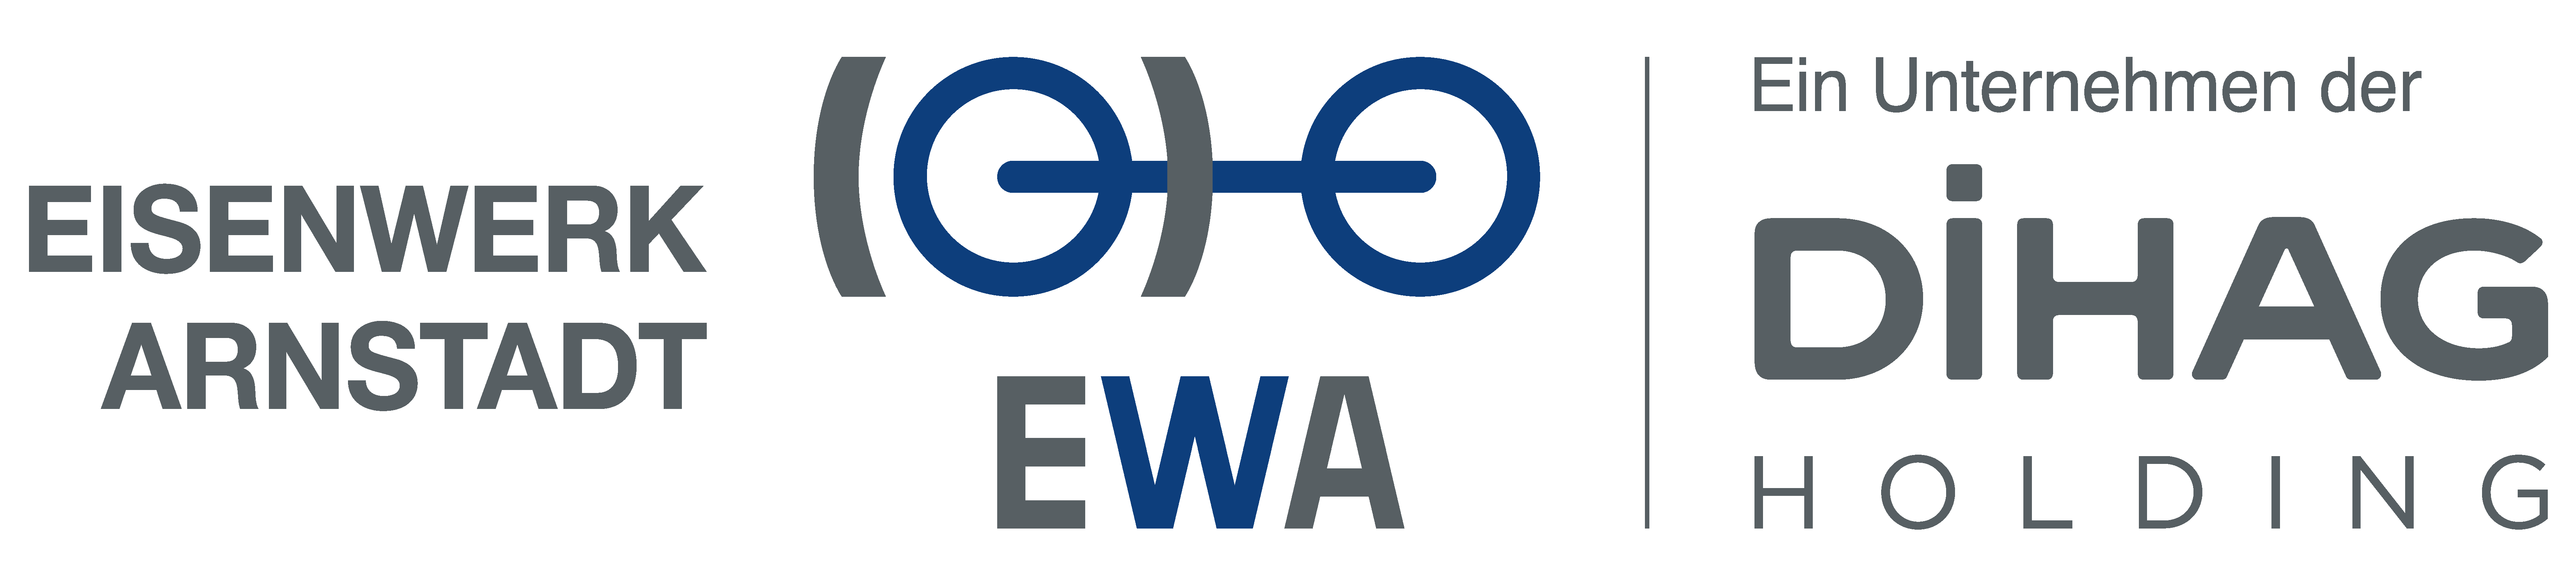 Karriere@EWA - Eisenwerk Arnstadt logo